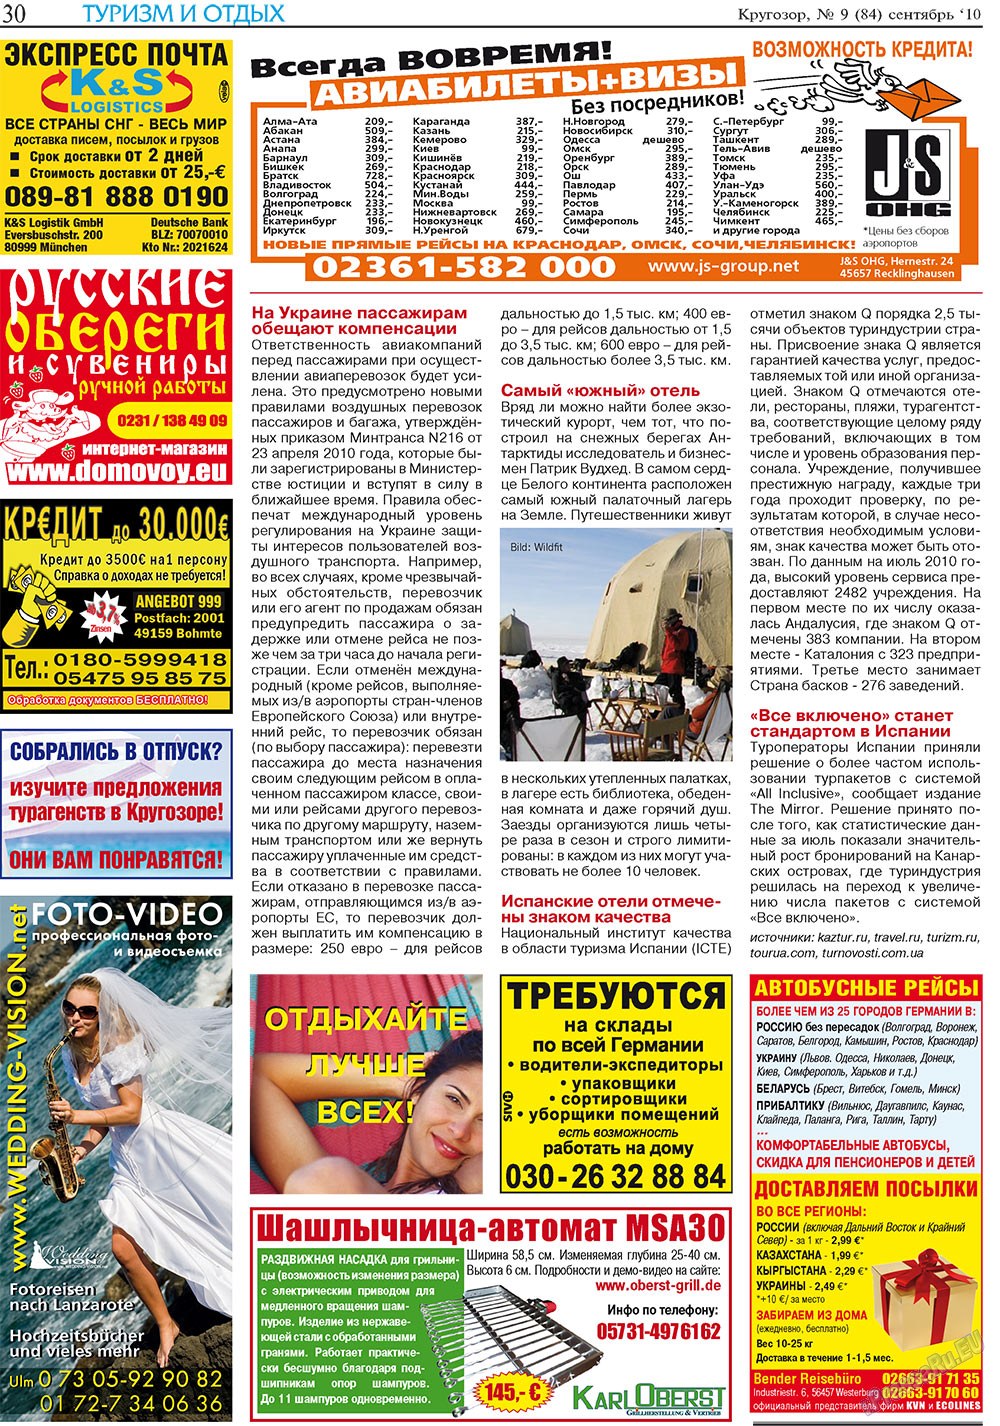 Кругозор плюс!, газета. 2010 №9 стр.54